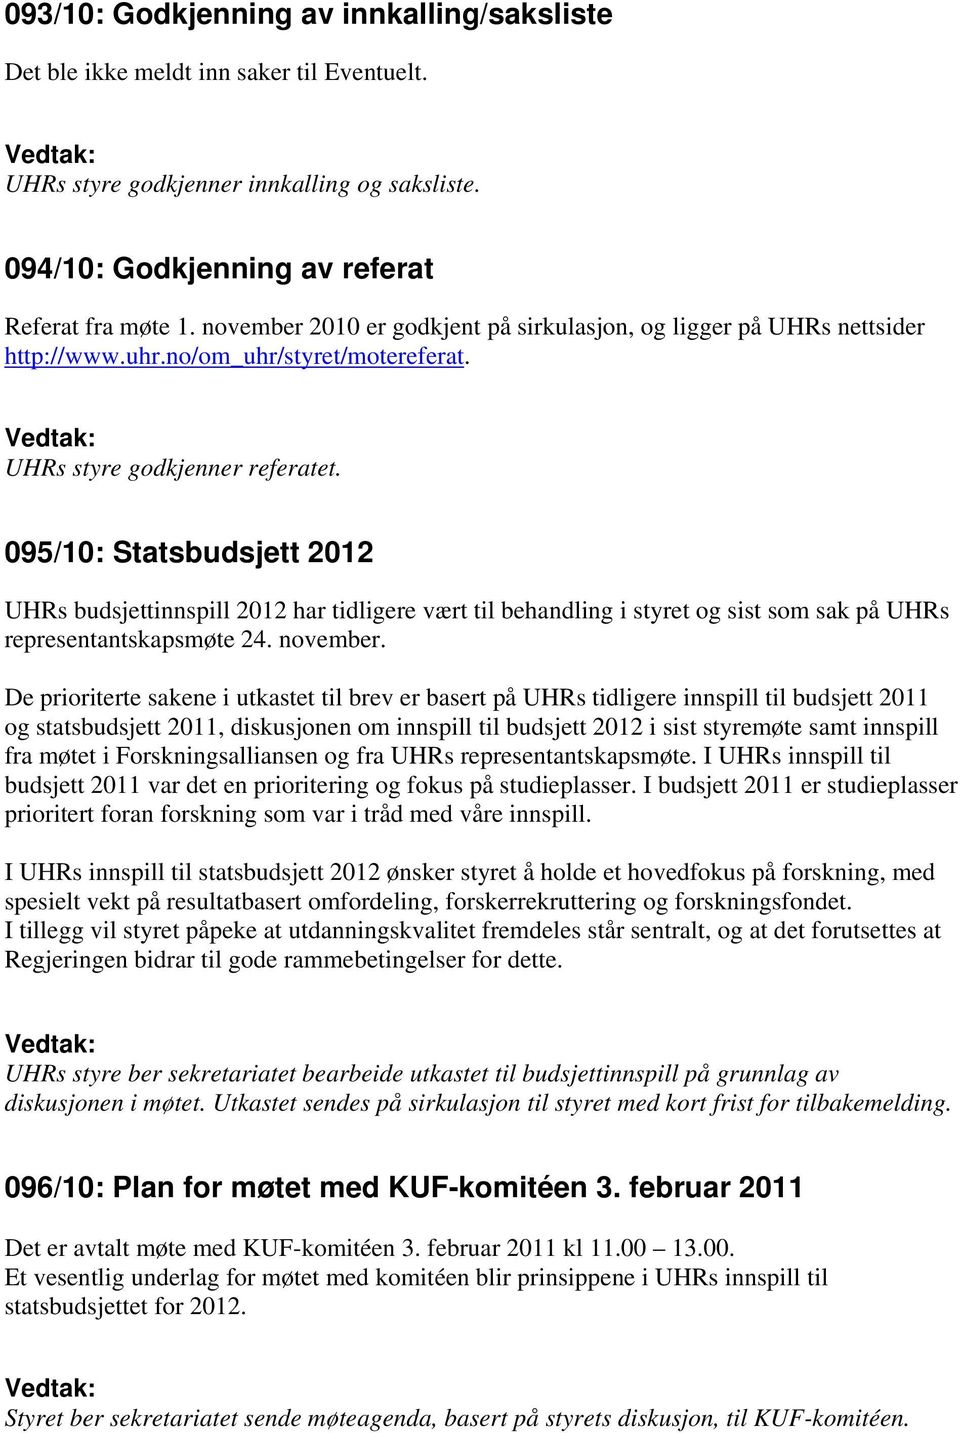 095/10: Statsbudsjett 2012 UHRs budsjettinnspill 2012 har tidligere vært til behandling i styret og sist som sak på UHRs representantskapsmøte 24. november.